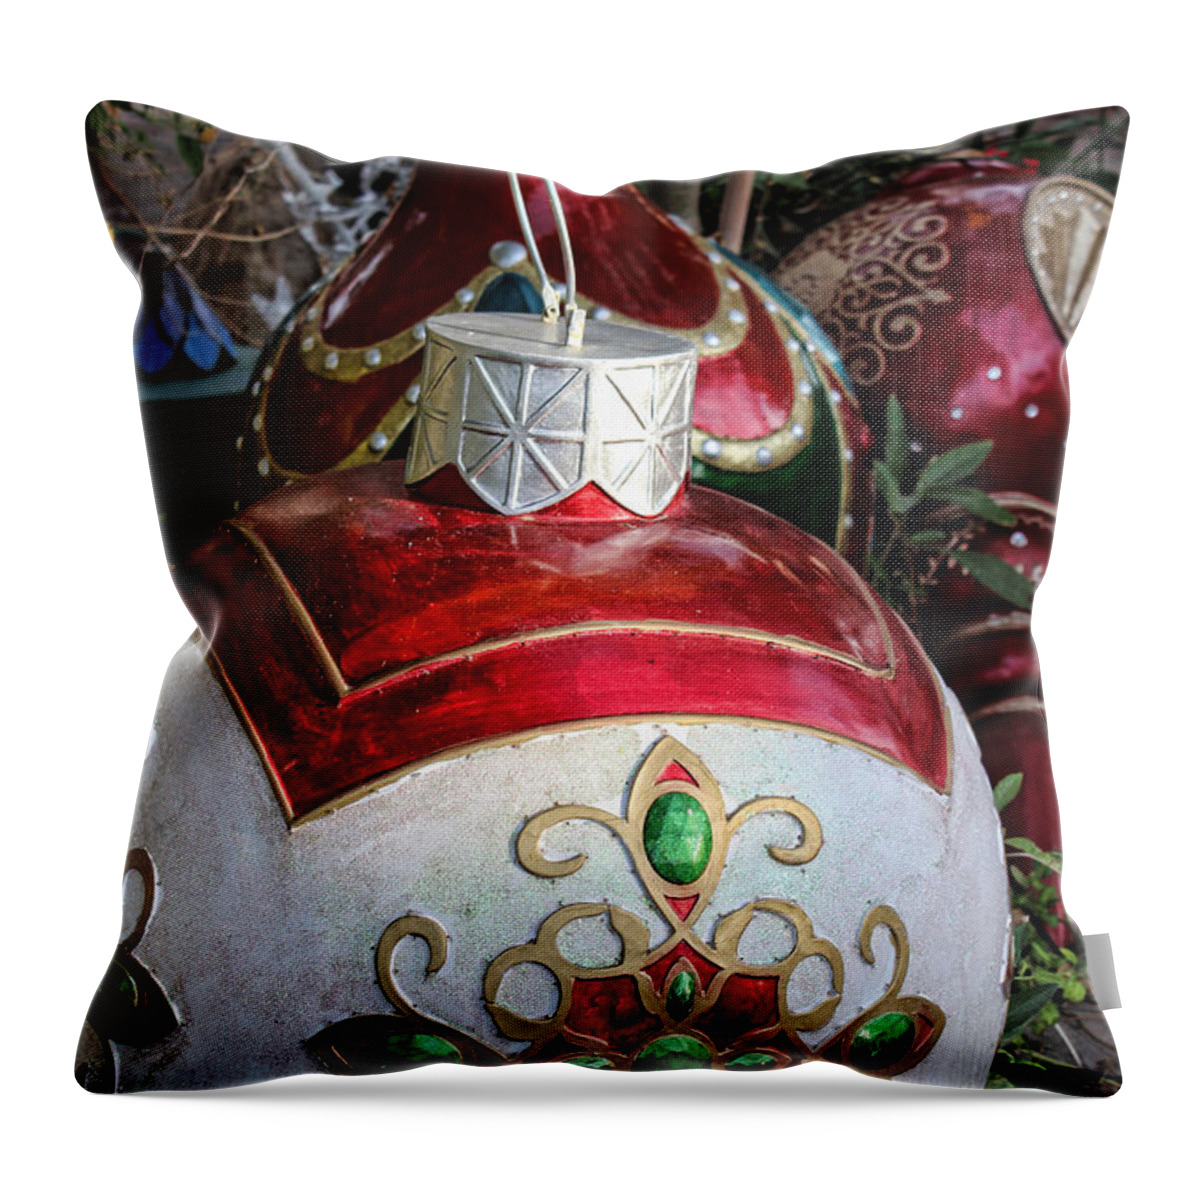 Christmas Bulbs Throw Pillow featuring the photograph Merry Joyful Christmas by Roberta Byram